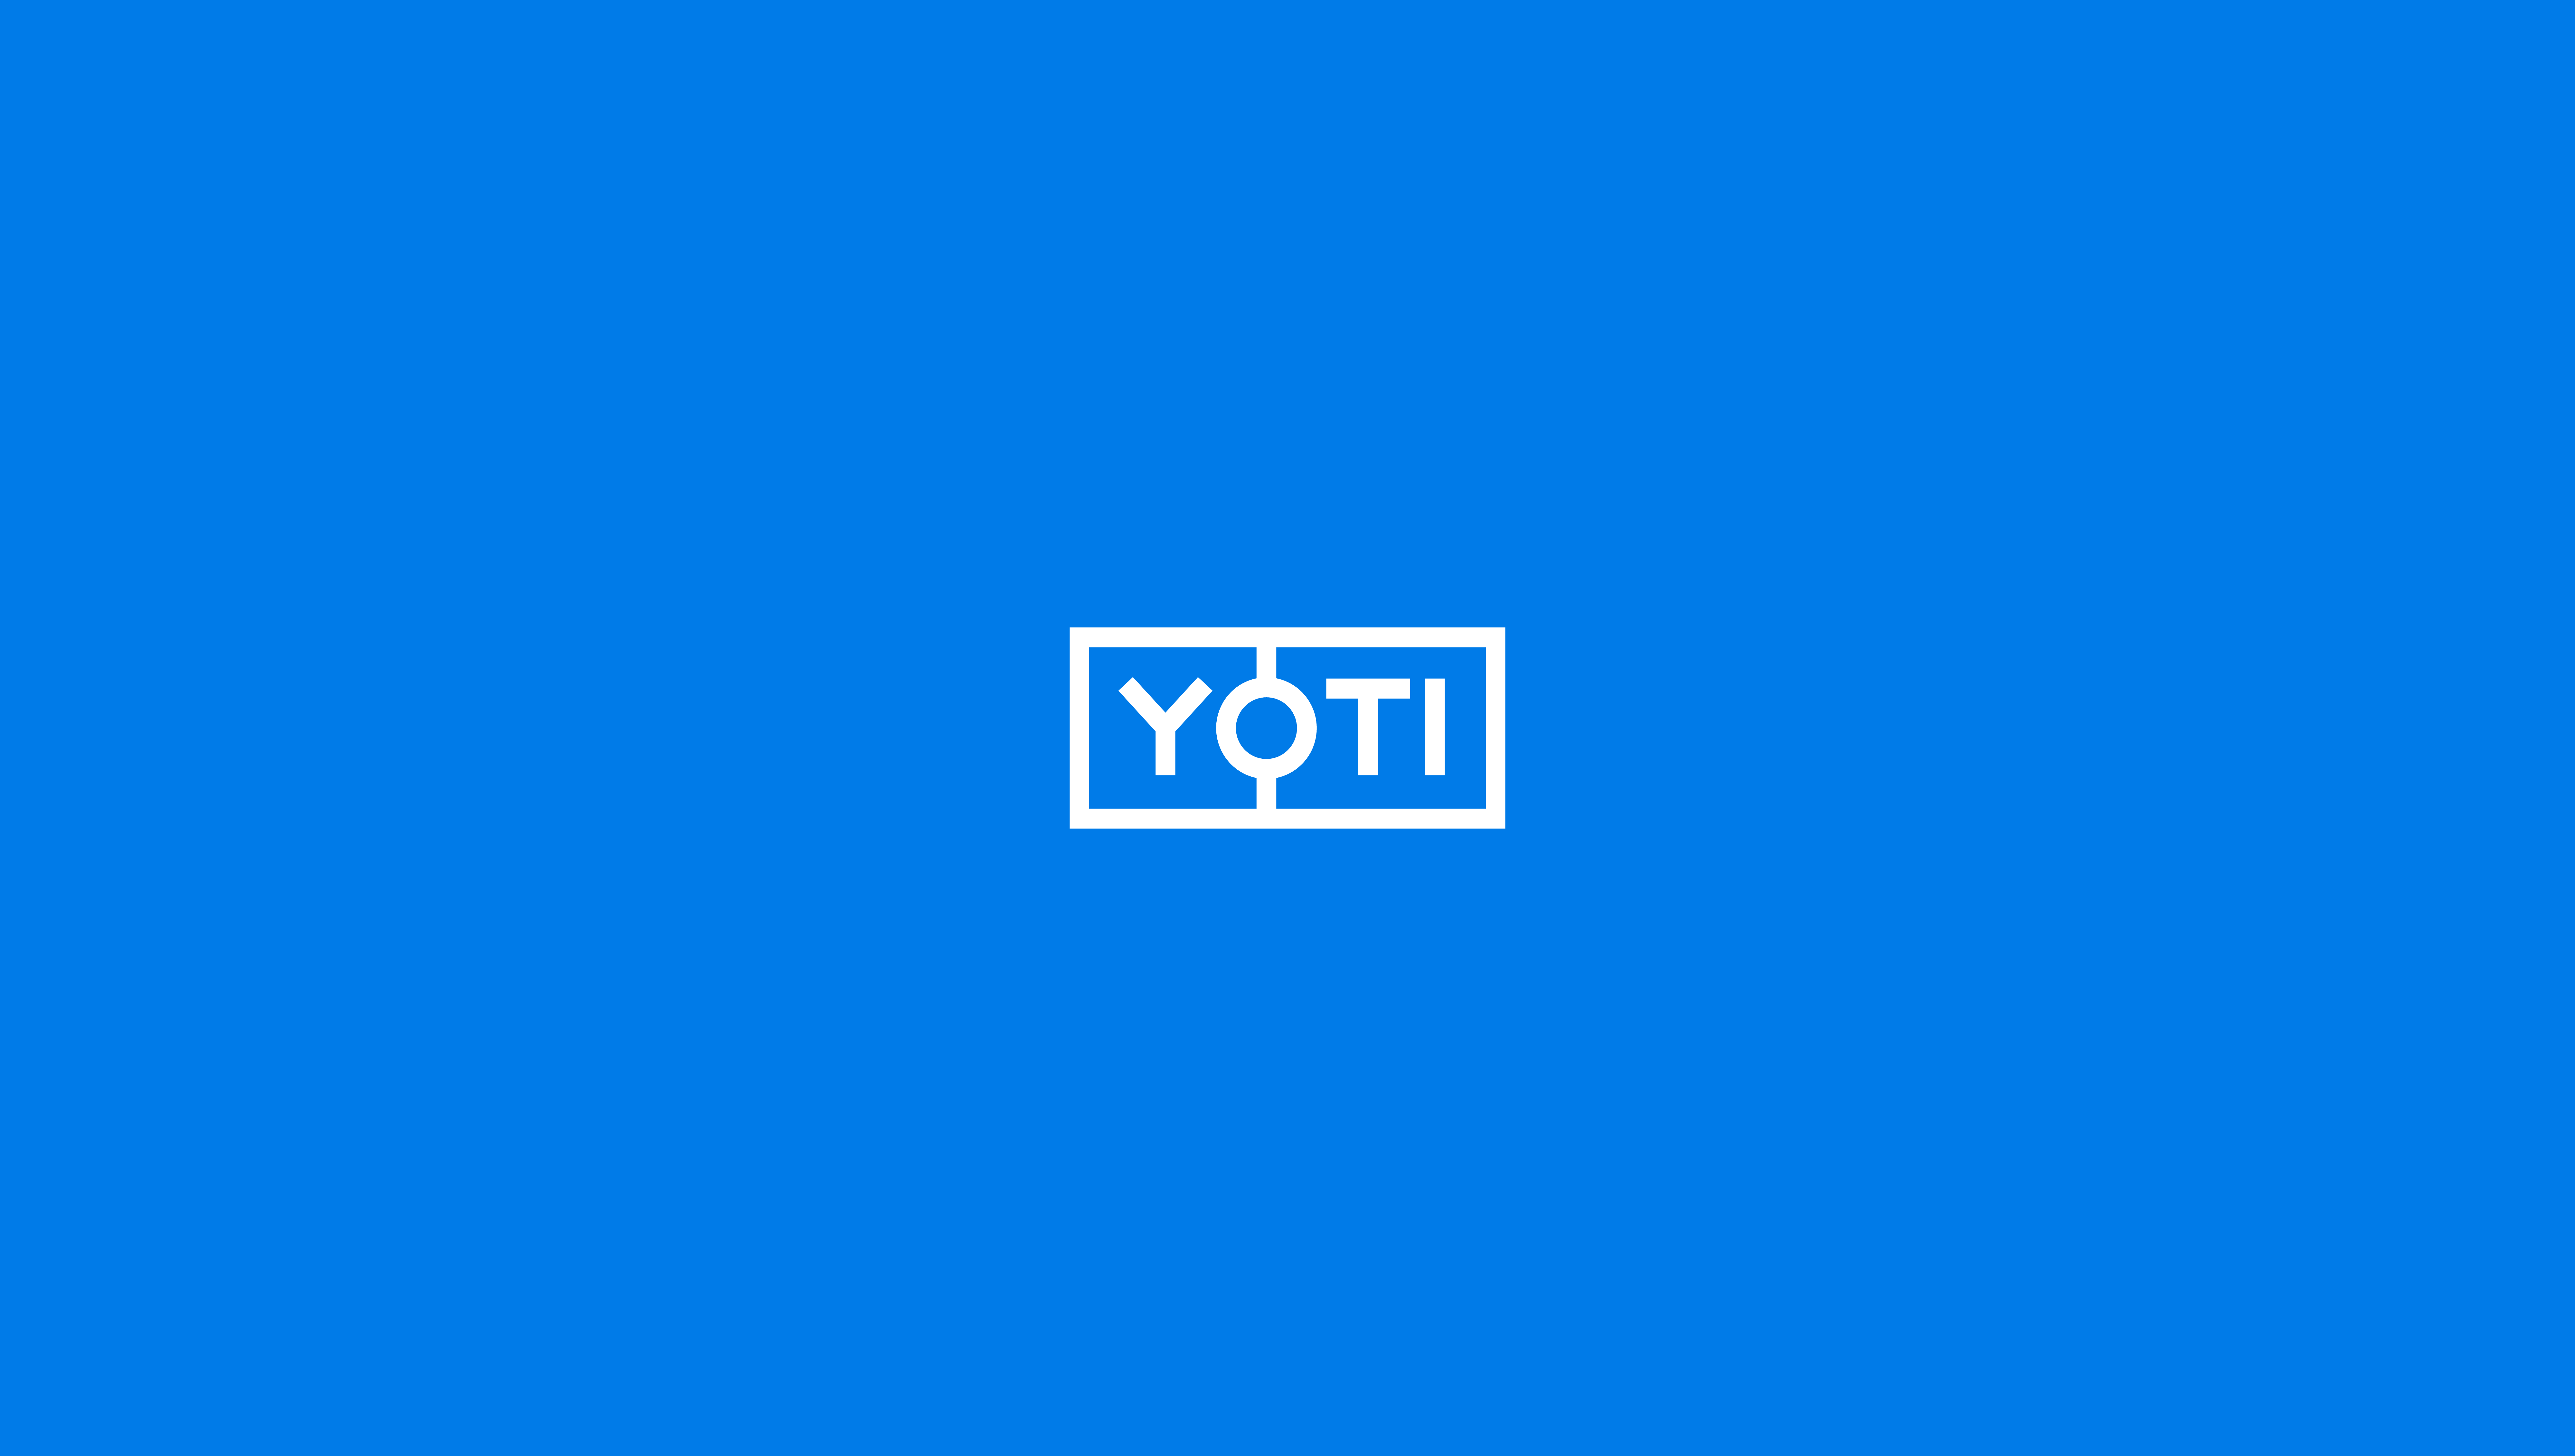 Yoti logo on blue background